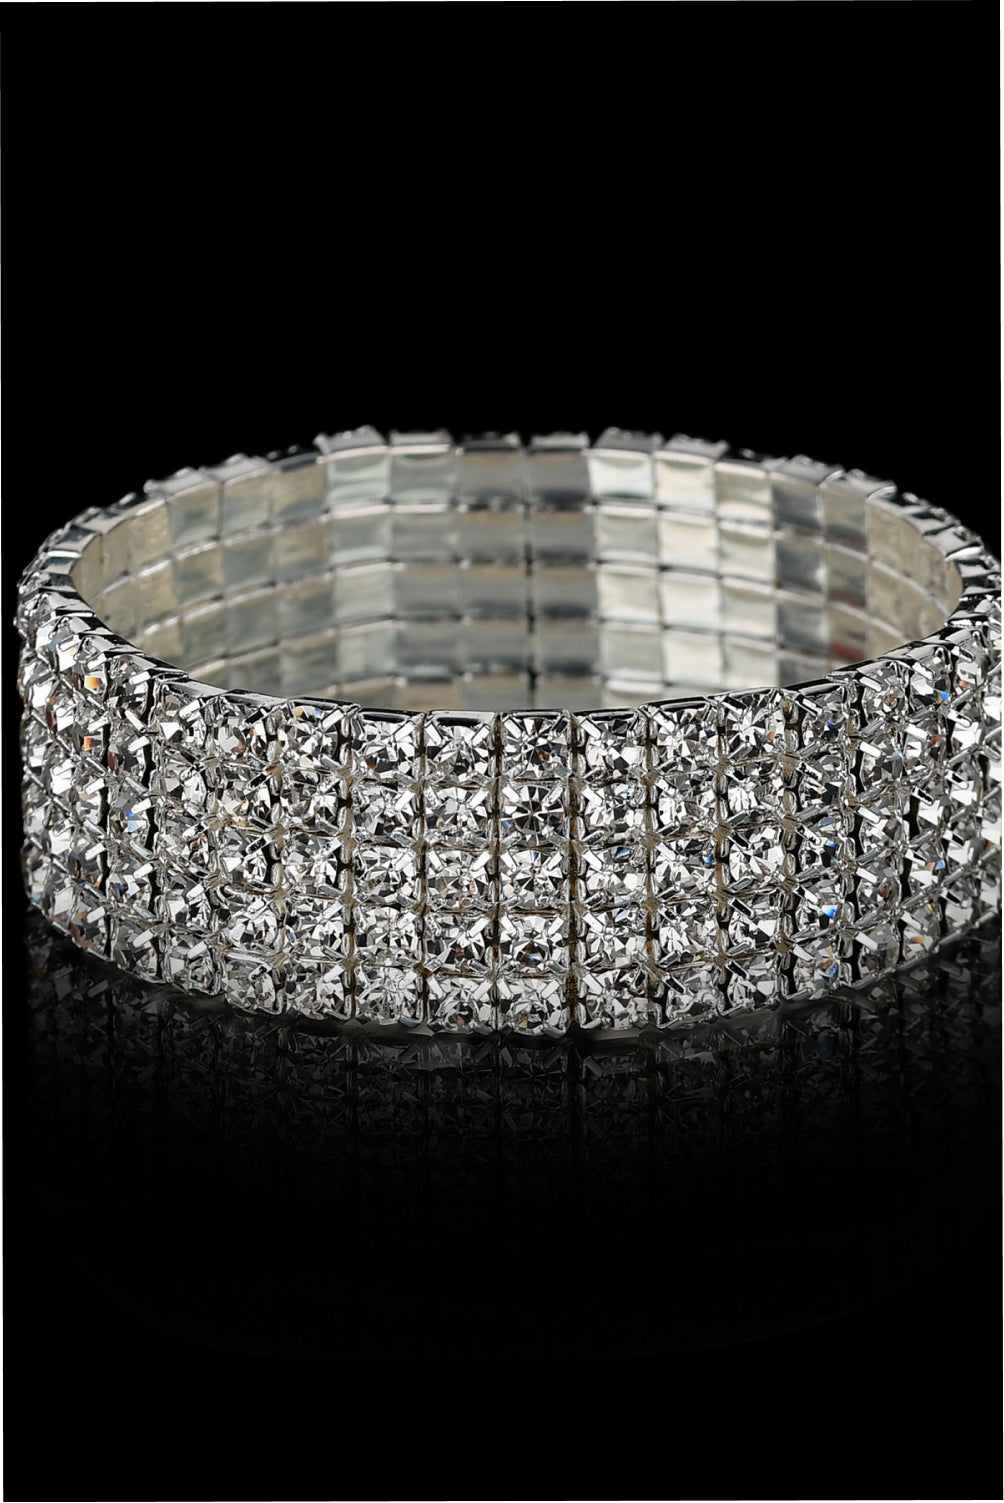 Alloy Elastic Bracelet - Silver / One Size - Women’s Jewelry - Bracelets - 1 - 2024